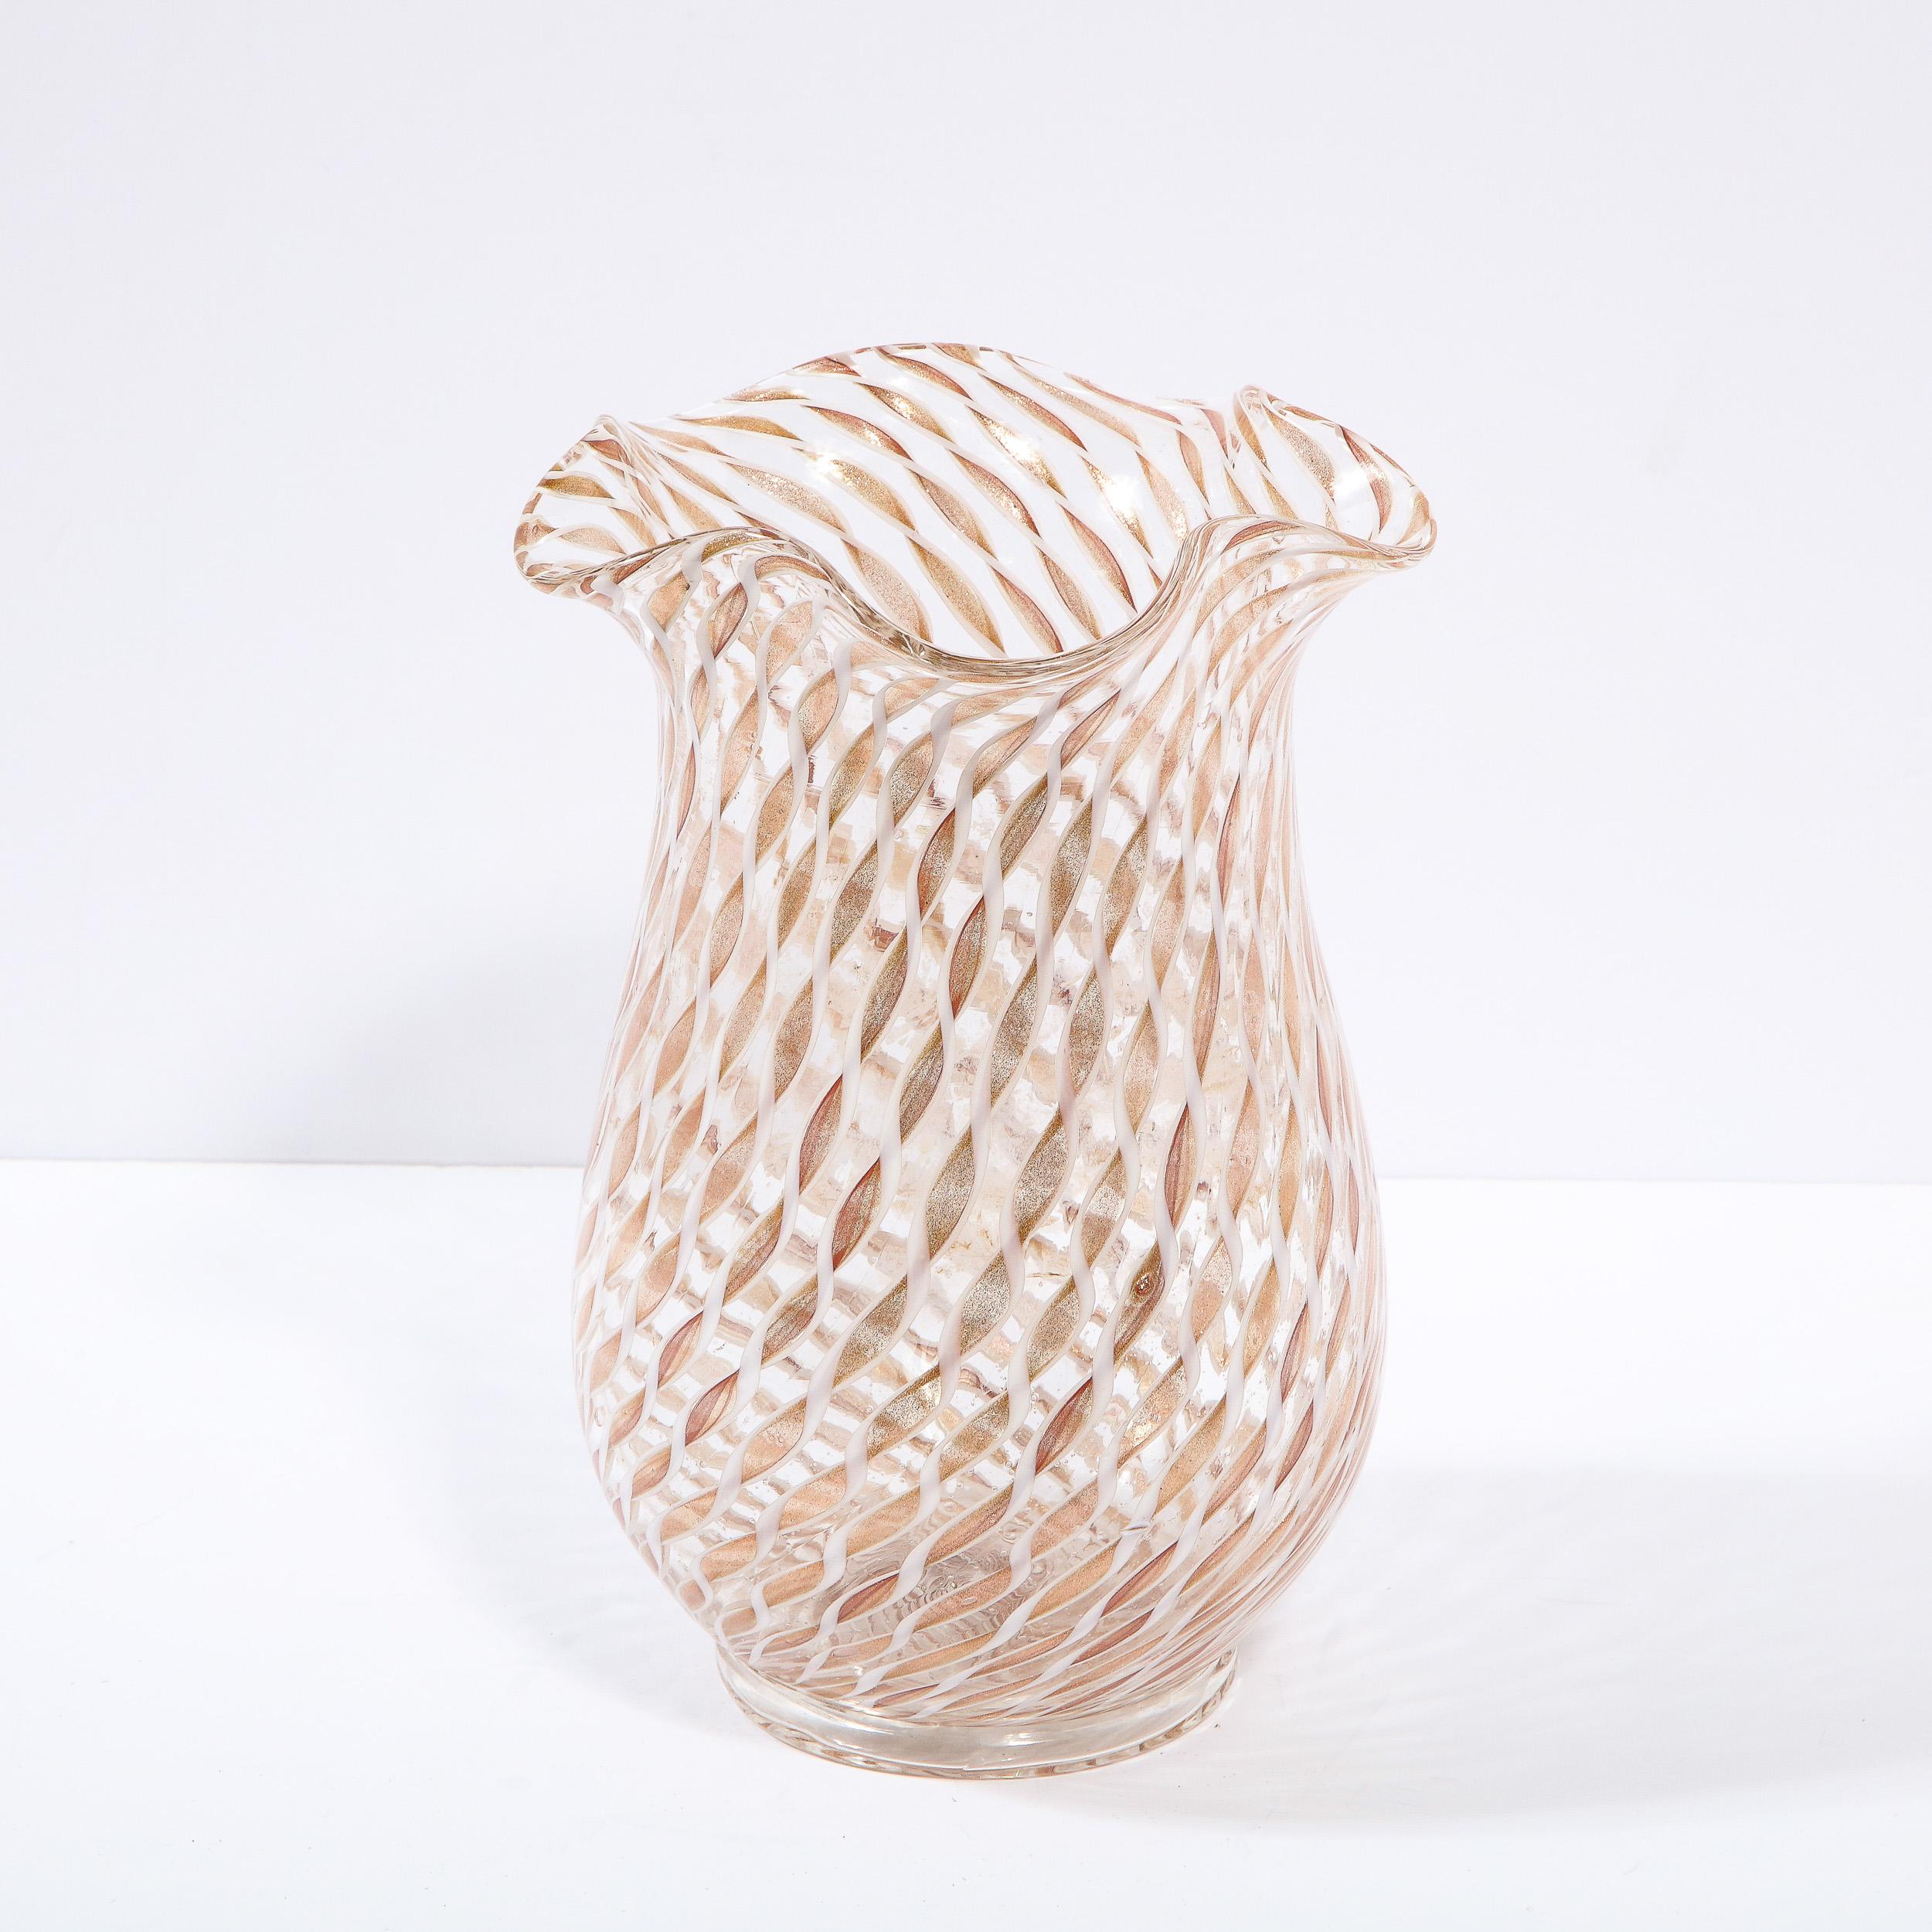 Diese atemberaubende Mid Century Modern-Vase wurde um 1960 in Murano, Italien, mundgeblasen - der Insel vor der Küste Venedigs, die seit Jahrhunderten für ihre hervorragende Glasproduktion bekannt ist. Er hat eine dezent verjüngte konische Form, die